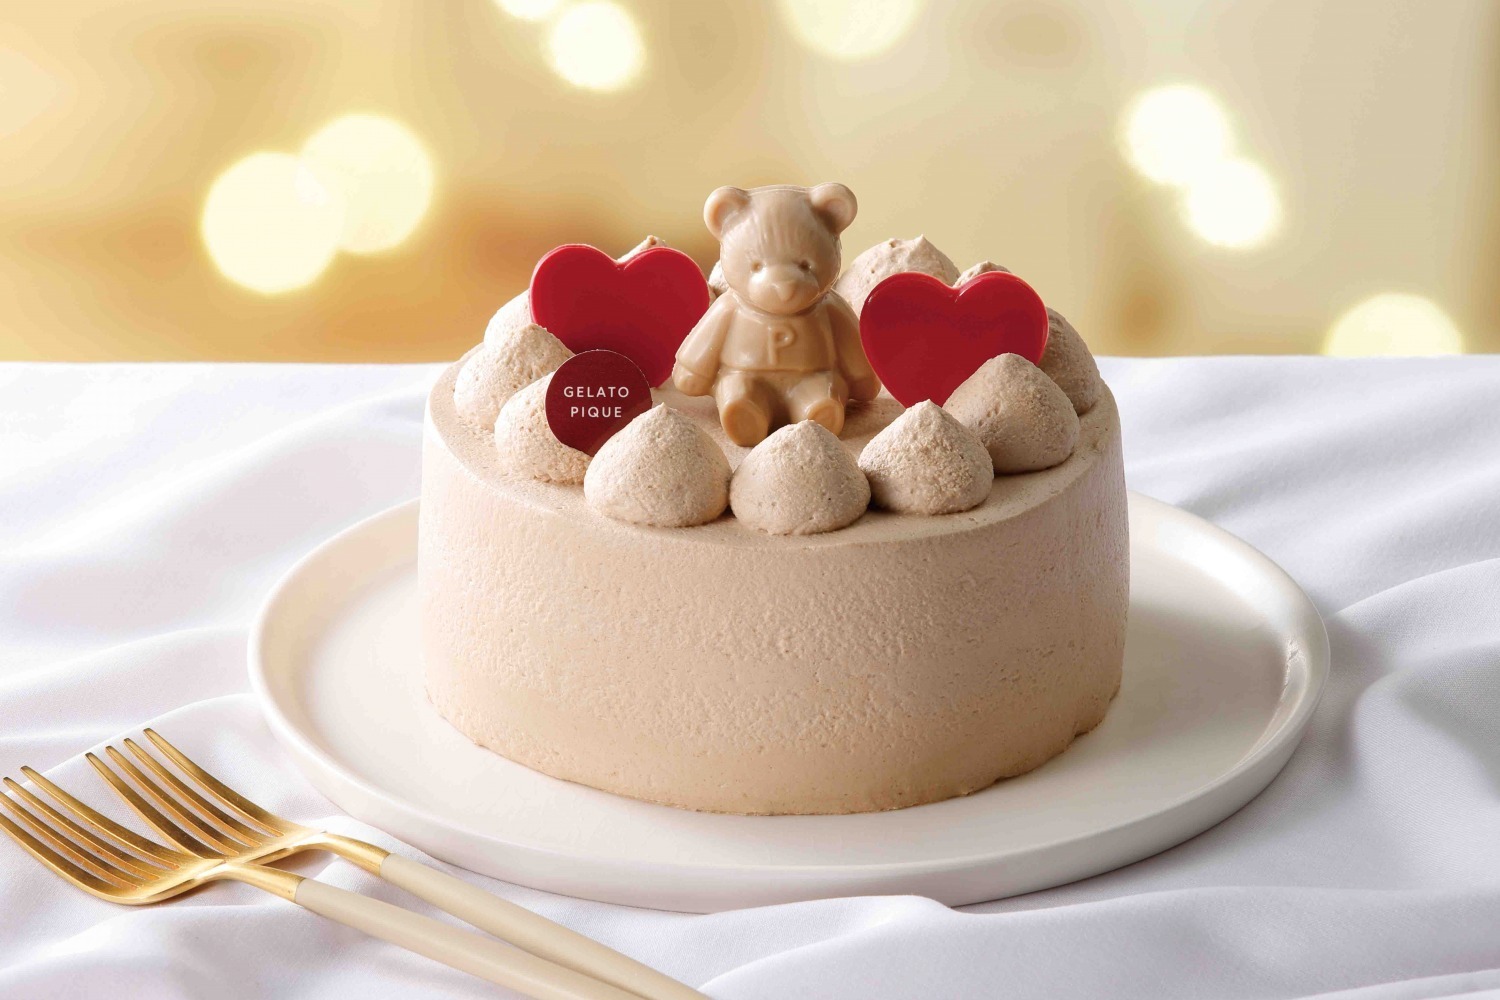 ジェラート ピケ22年クリスマスケーキ“ブラウンベア”のメープル香る